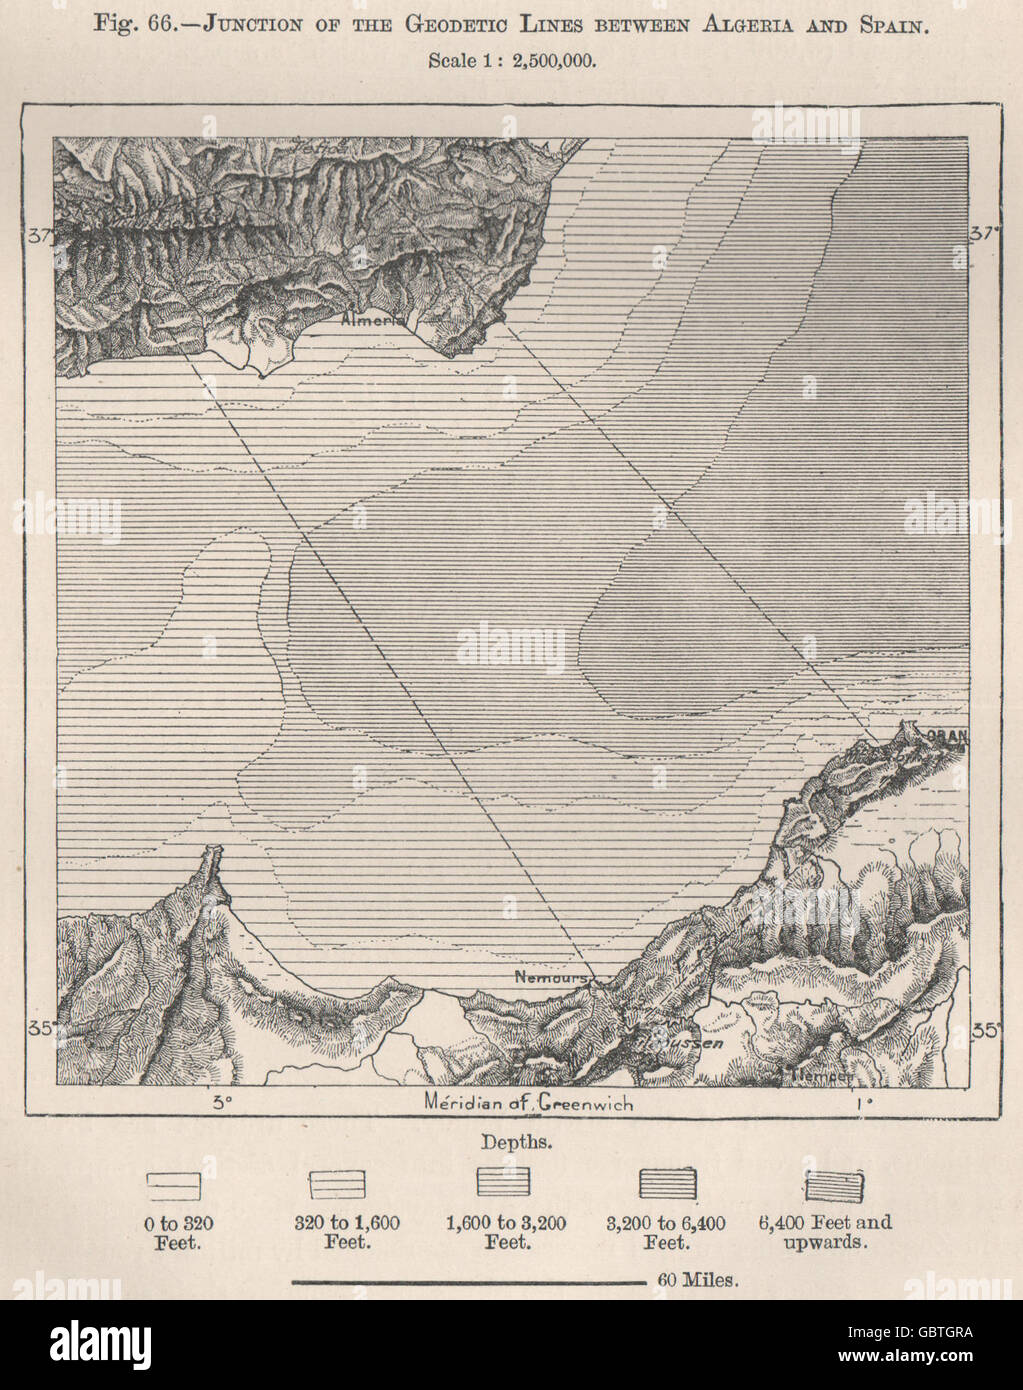 Kreuzung der geodätischen Linien zwischen Algerien und Spanien, 1885 Antike Landkarte Stockfoto